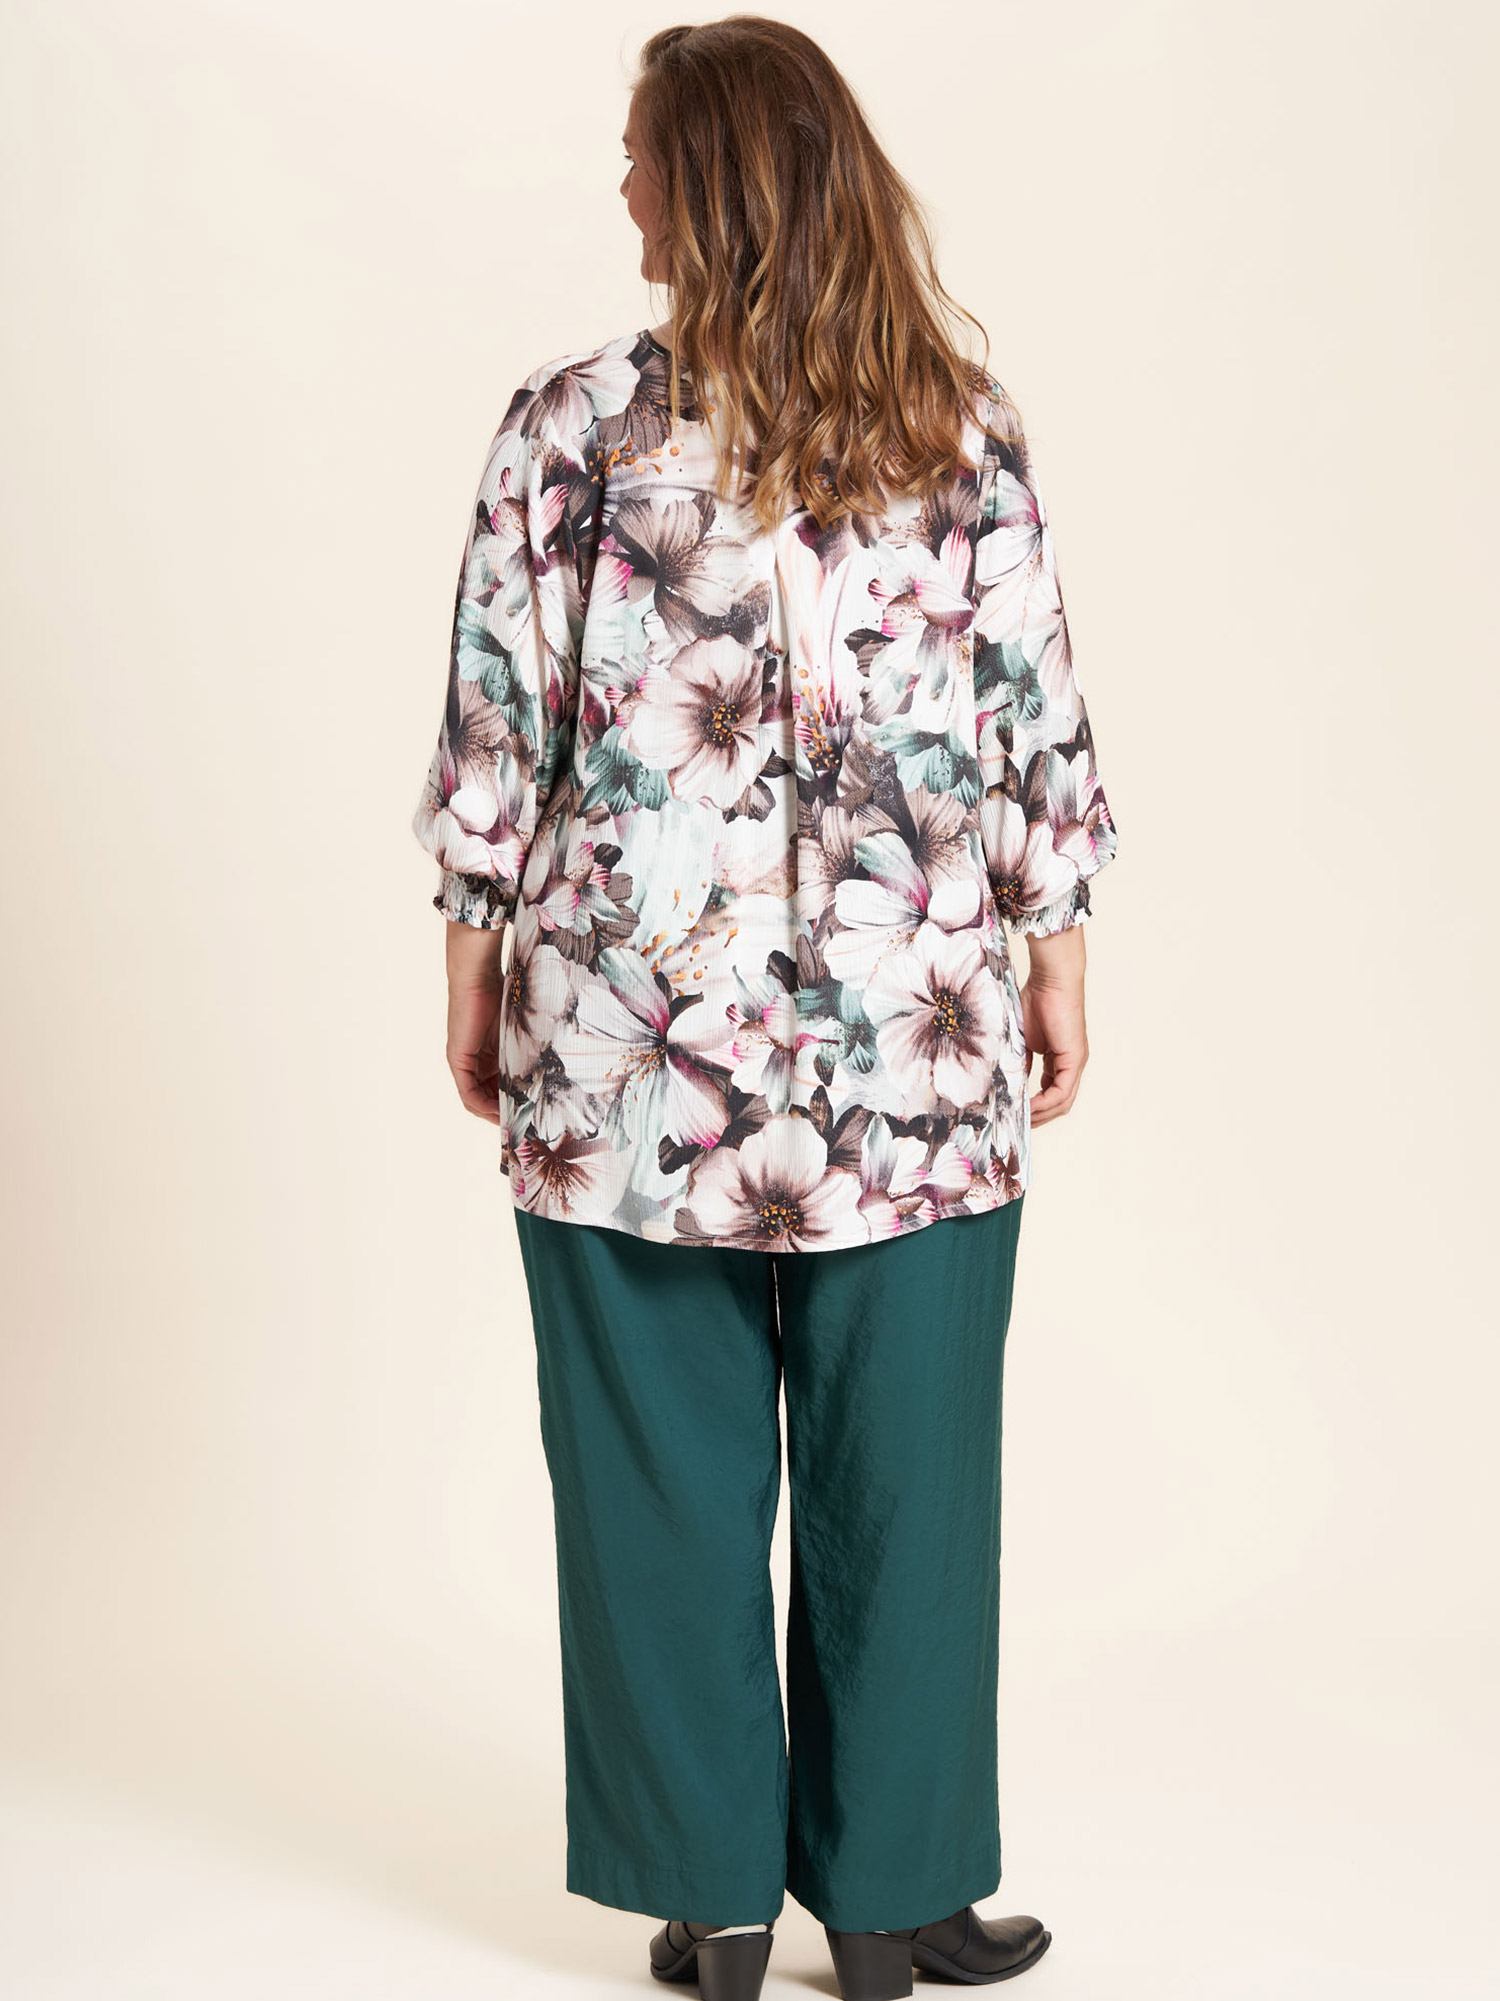 Vicky - Viskose bluse med smukt blomster print i grønne og rosa nuancer fra Gozzip